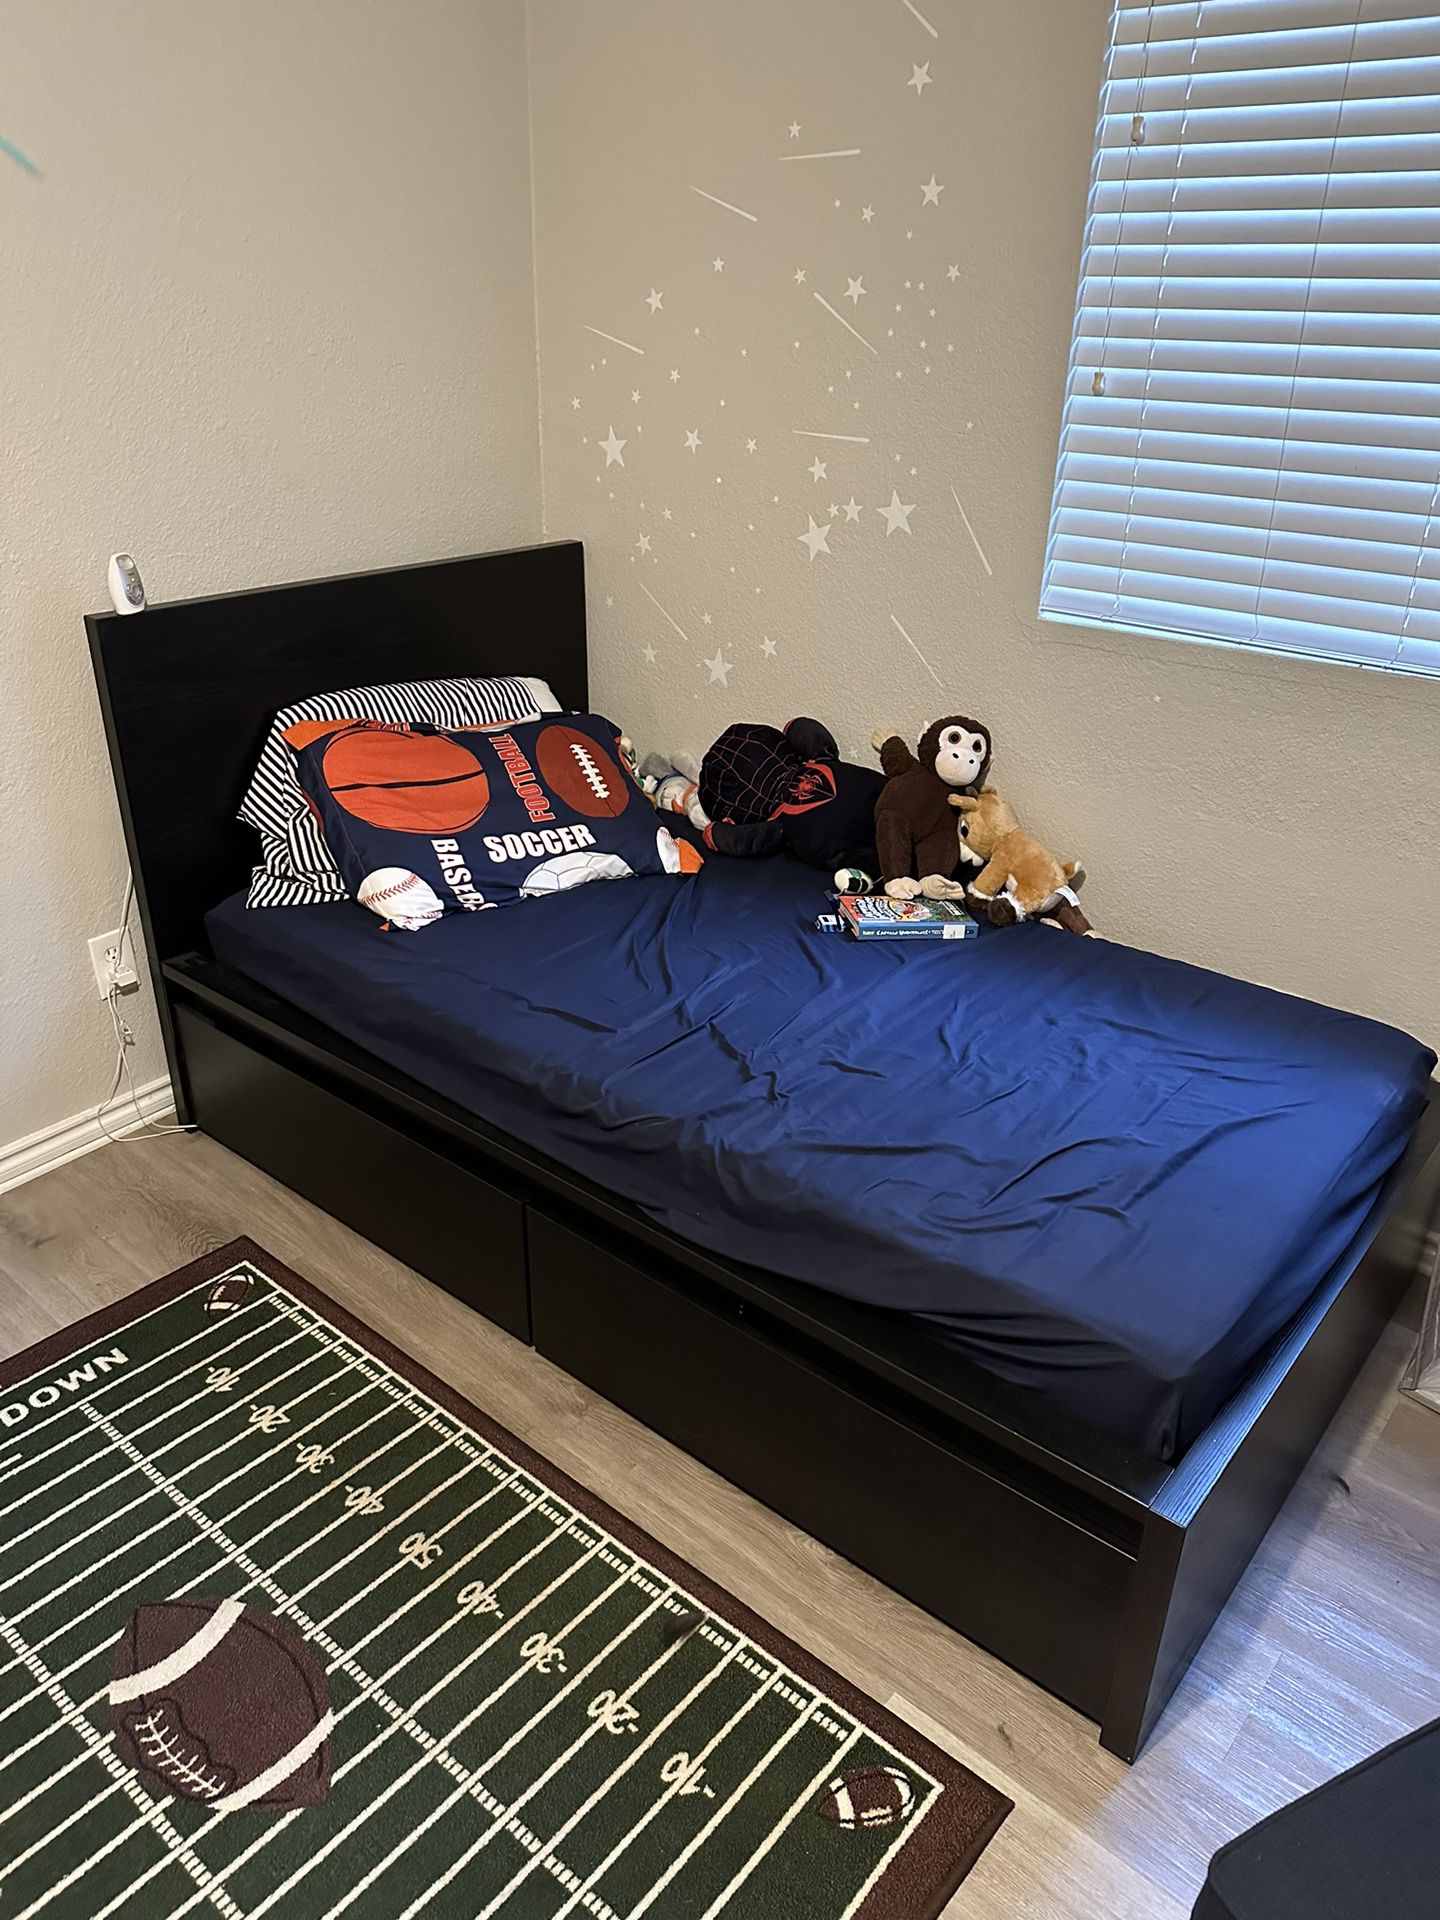 Kids Bedroom Set